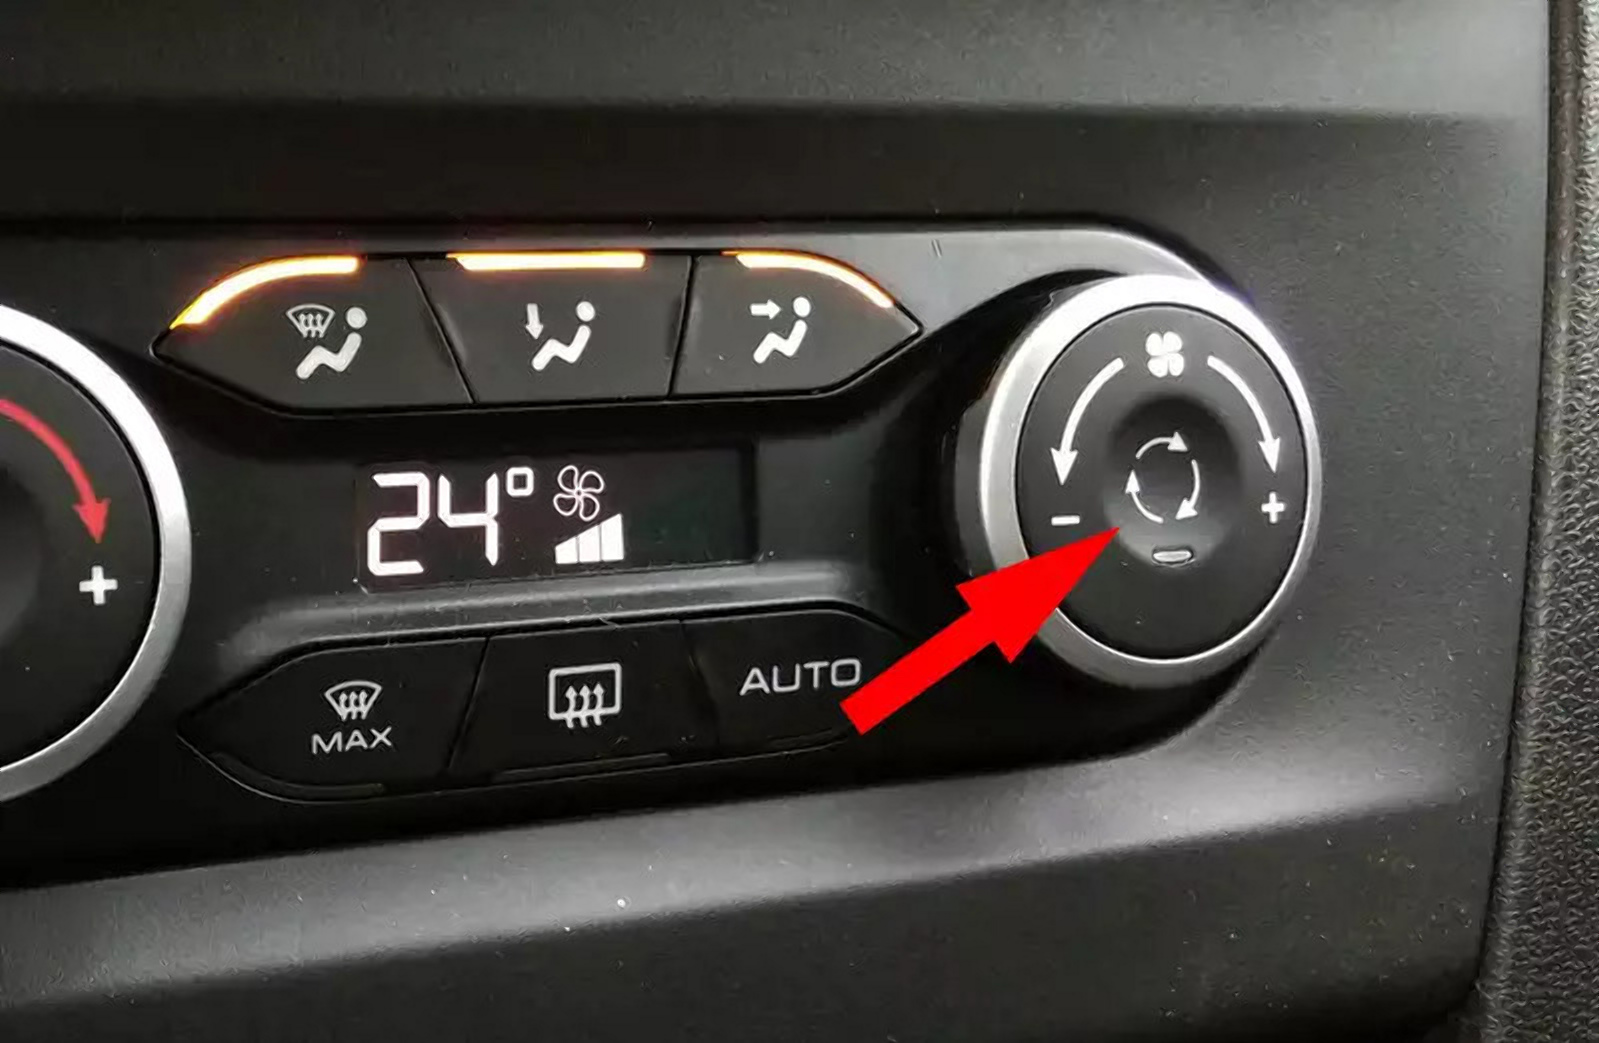 Непонятная кнопка в автомобиле: разные пиктограммы, но одна функция